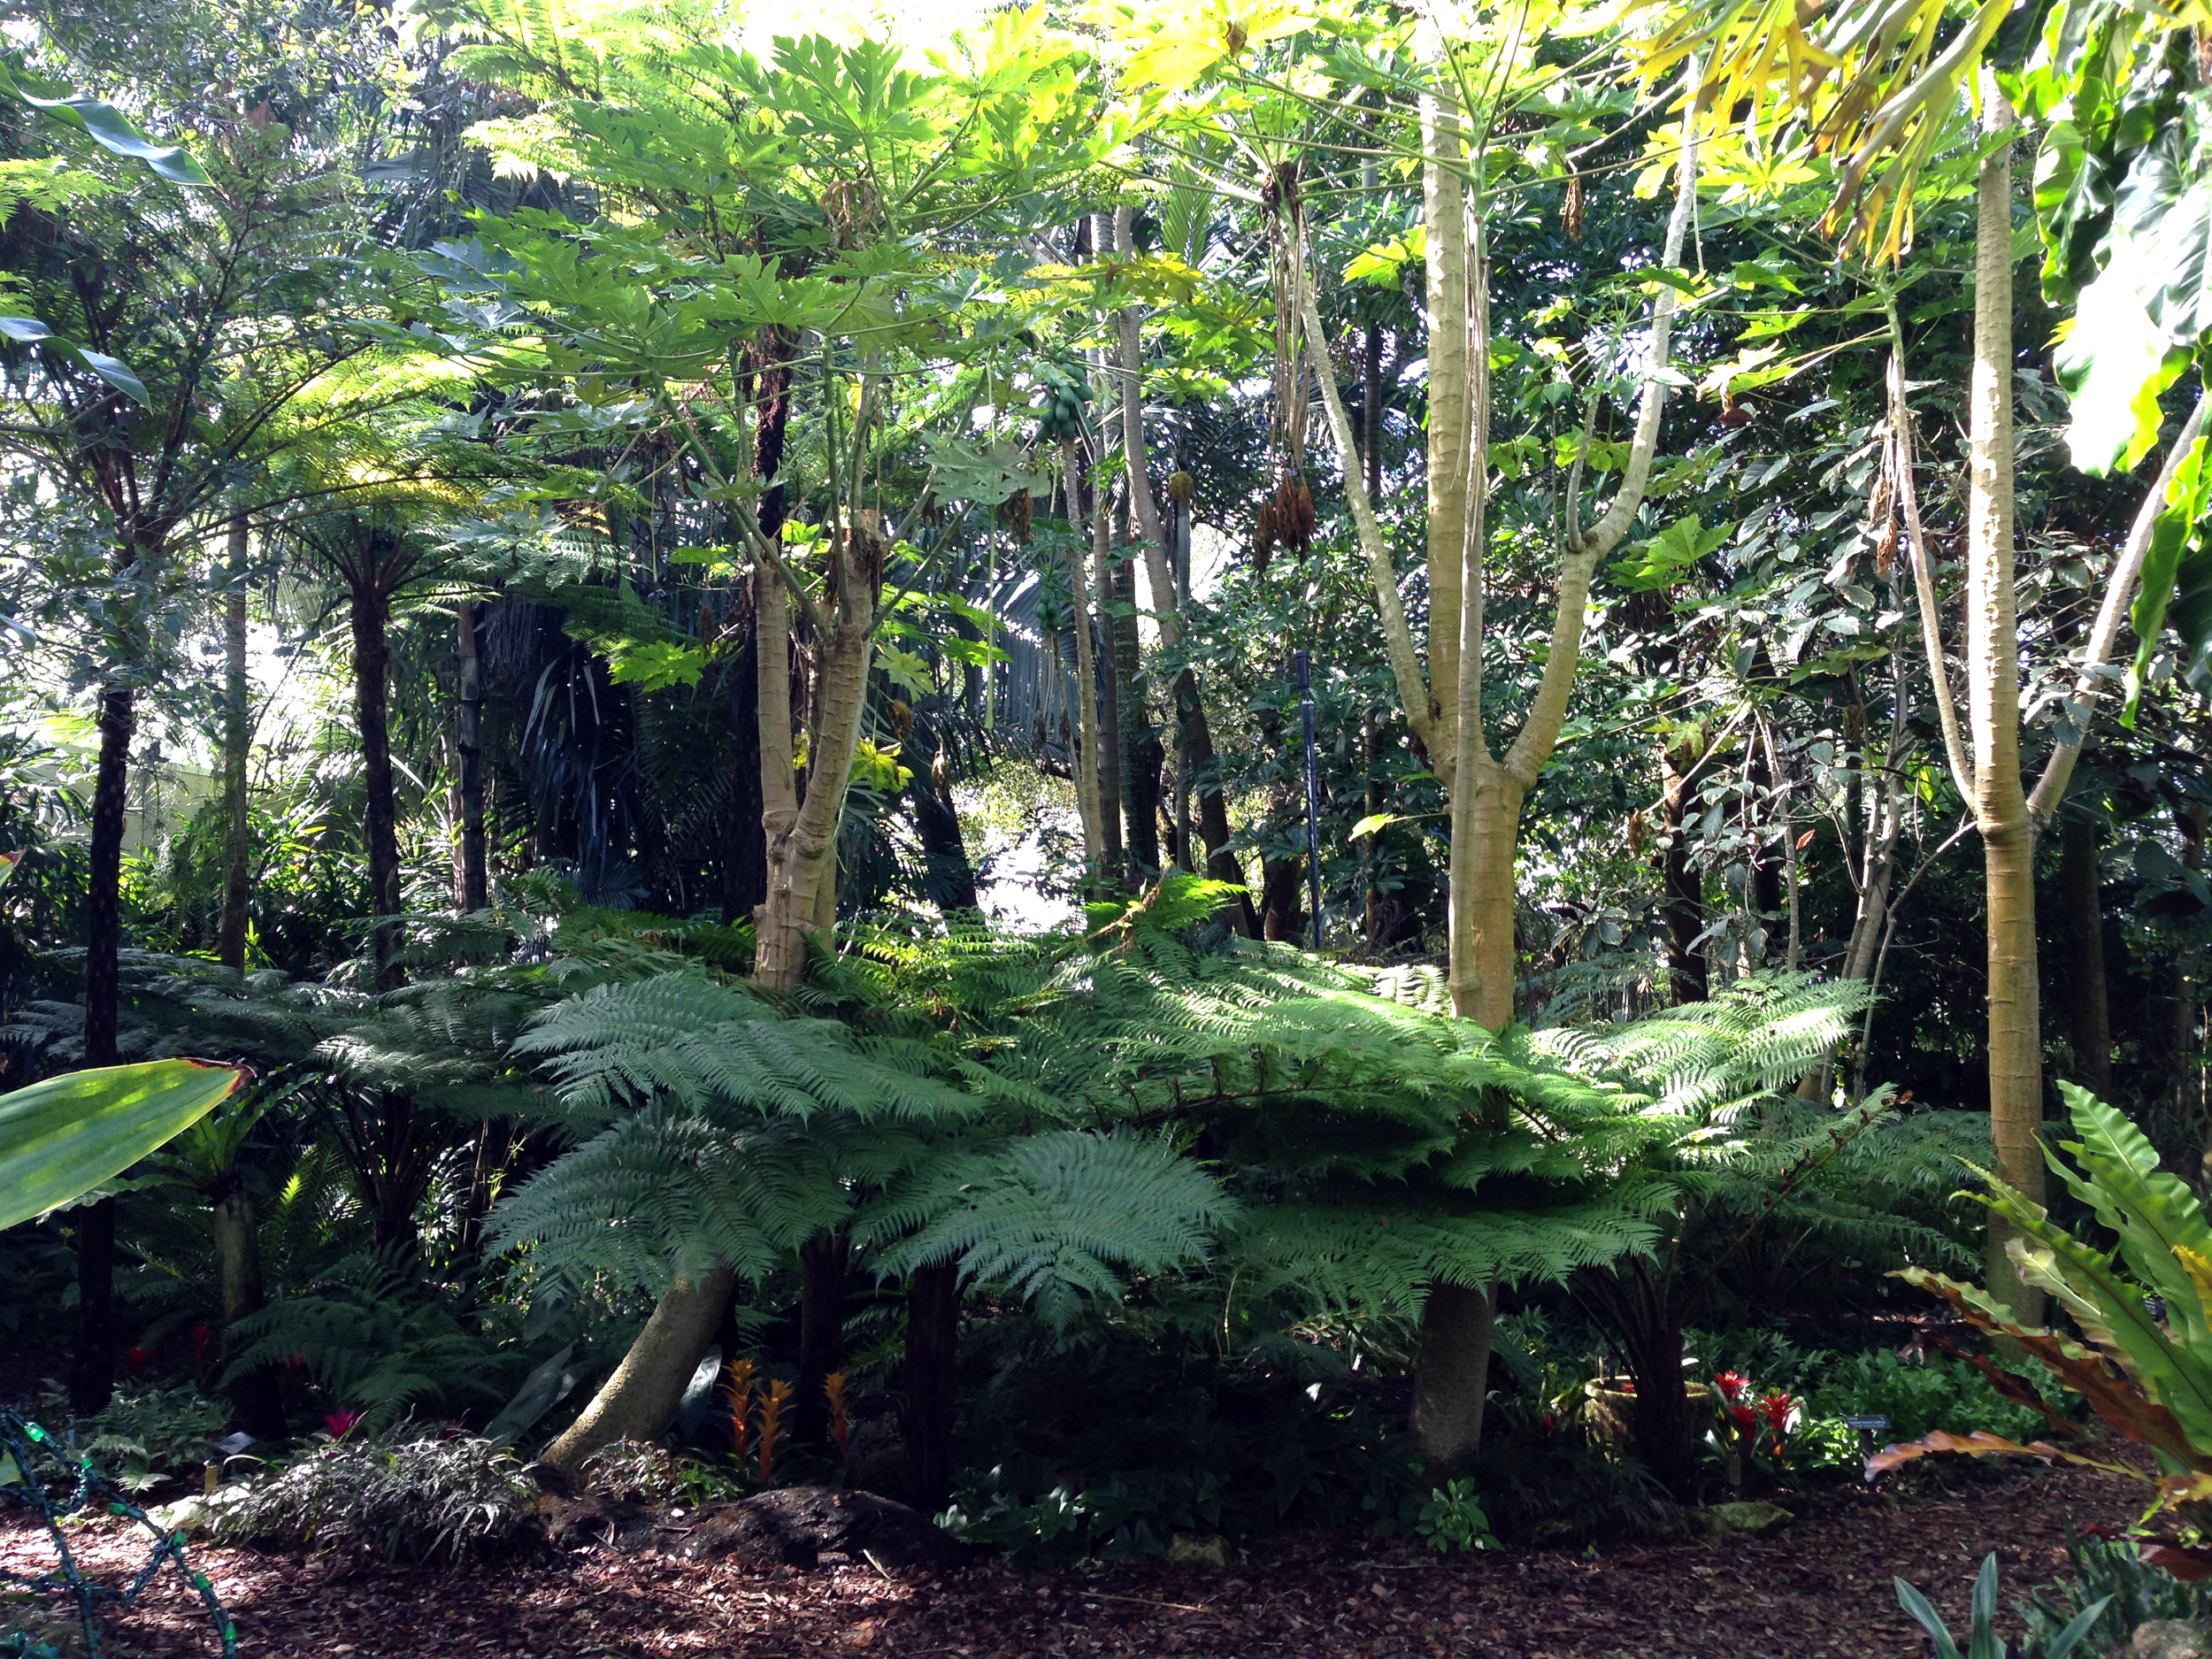 Giant ferns